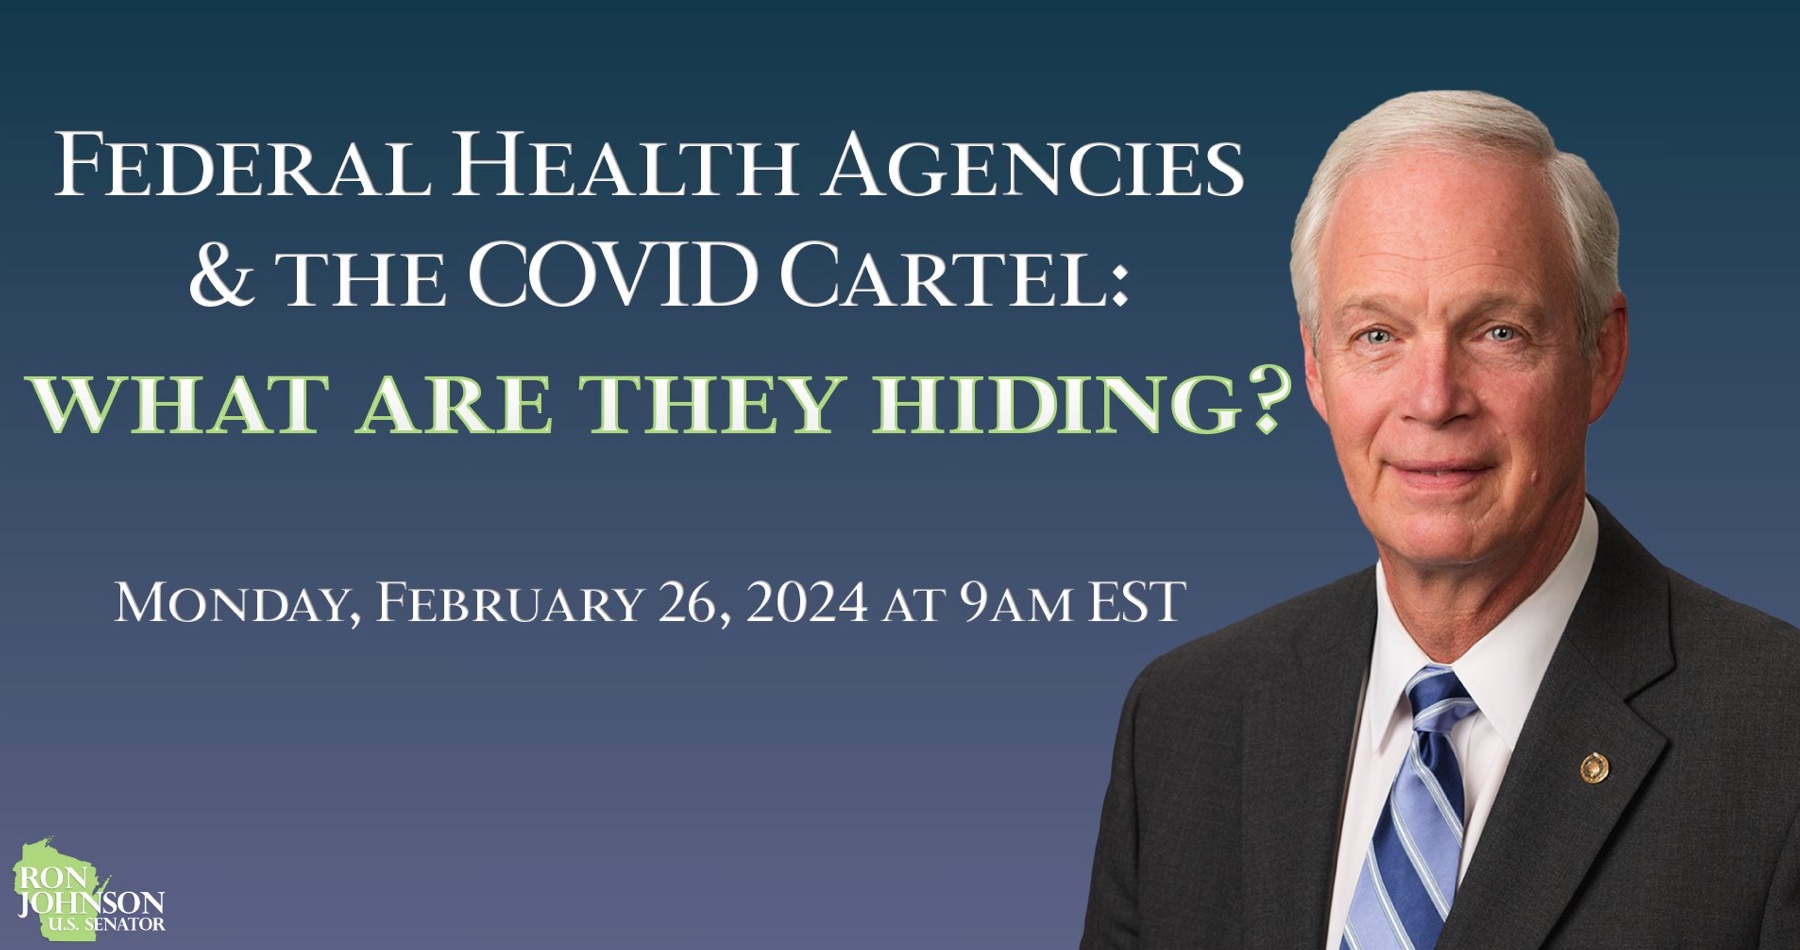 VIDEO: Čo všetko pred očami verejnosti skrývajú americké federálne zdravotnícke agentúry a Covid kartel